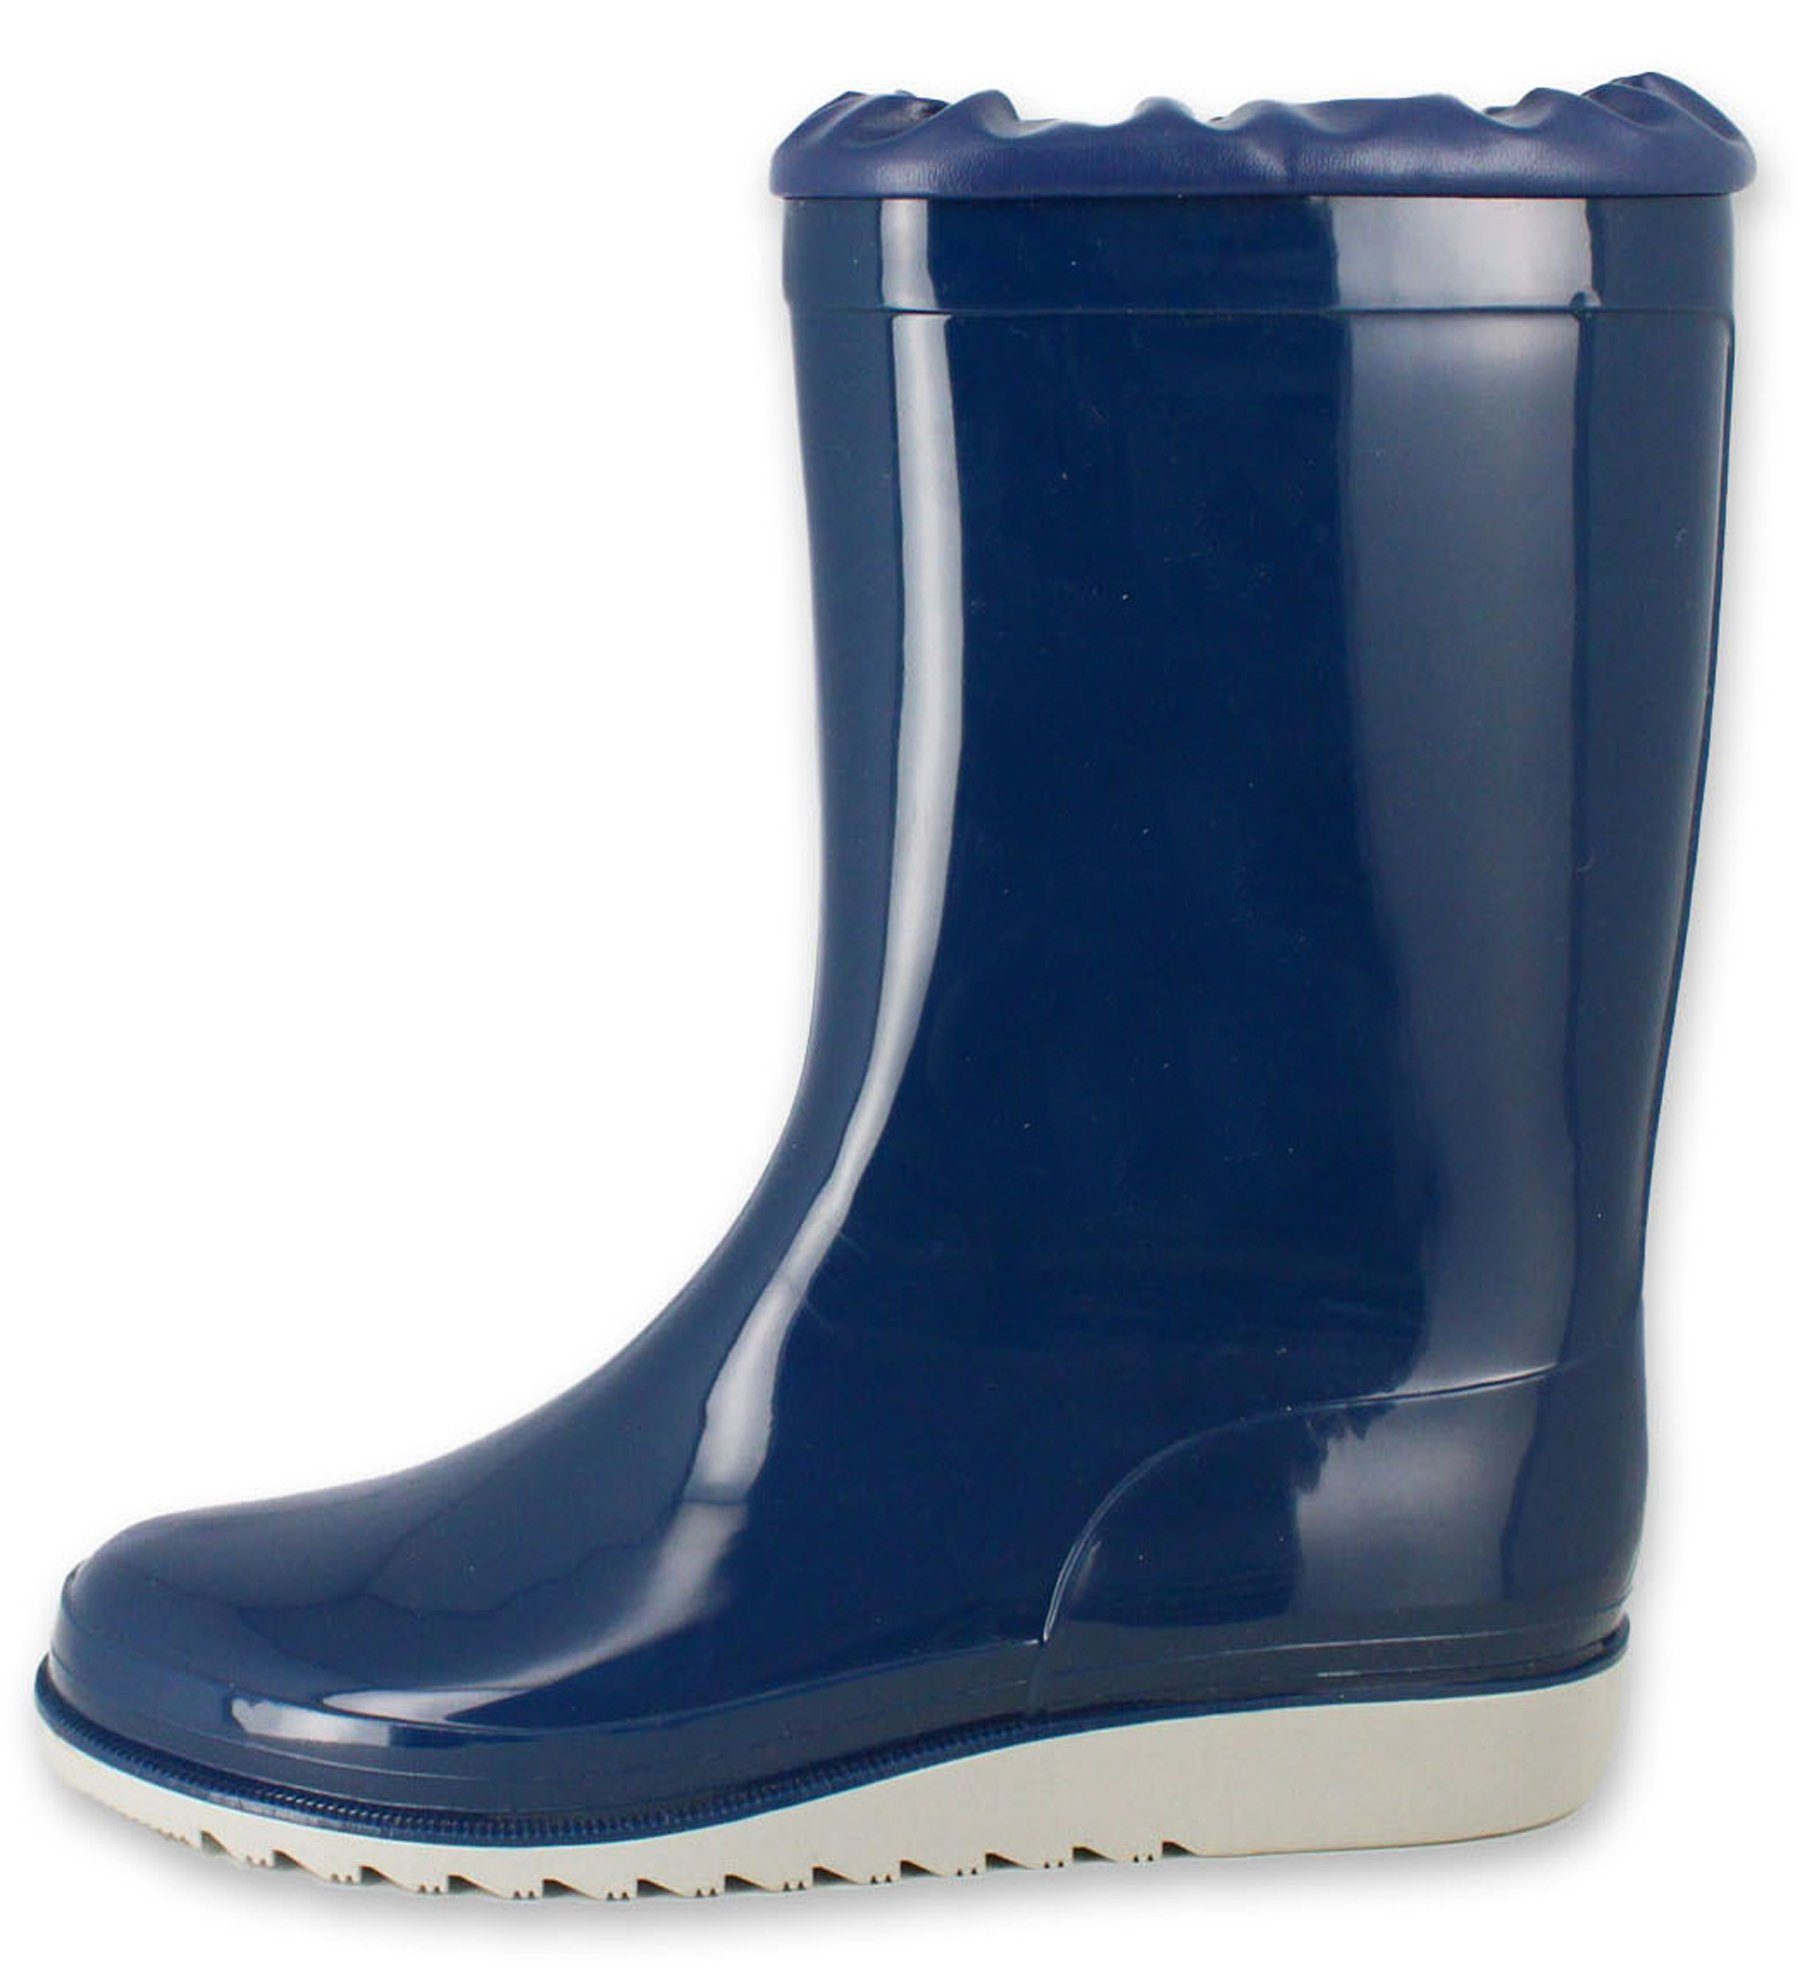 Beck Regenstiefel Basic Gummistiefel (zeitloser Stiefel, für trockene Füße bei Regenwetter) wasserdicht, mit Wetterschutzkragen, mit Einlegesohle